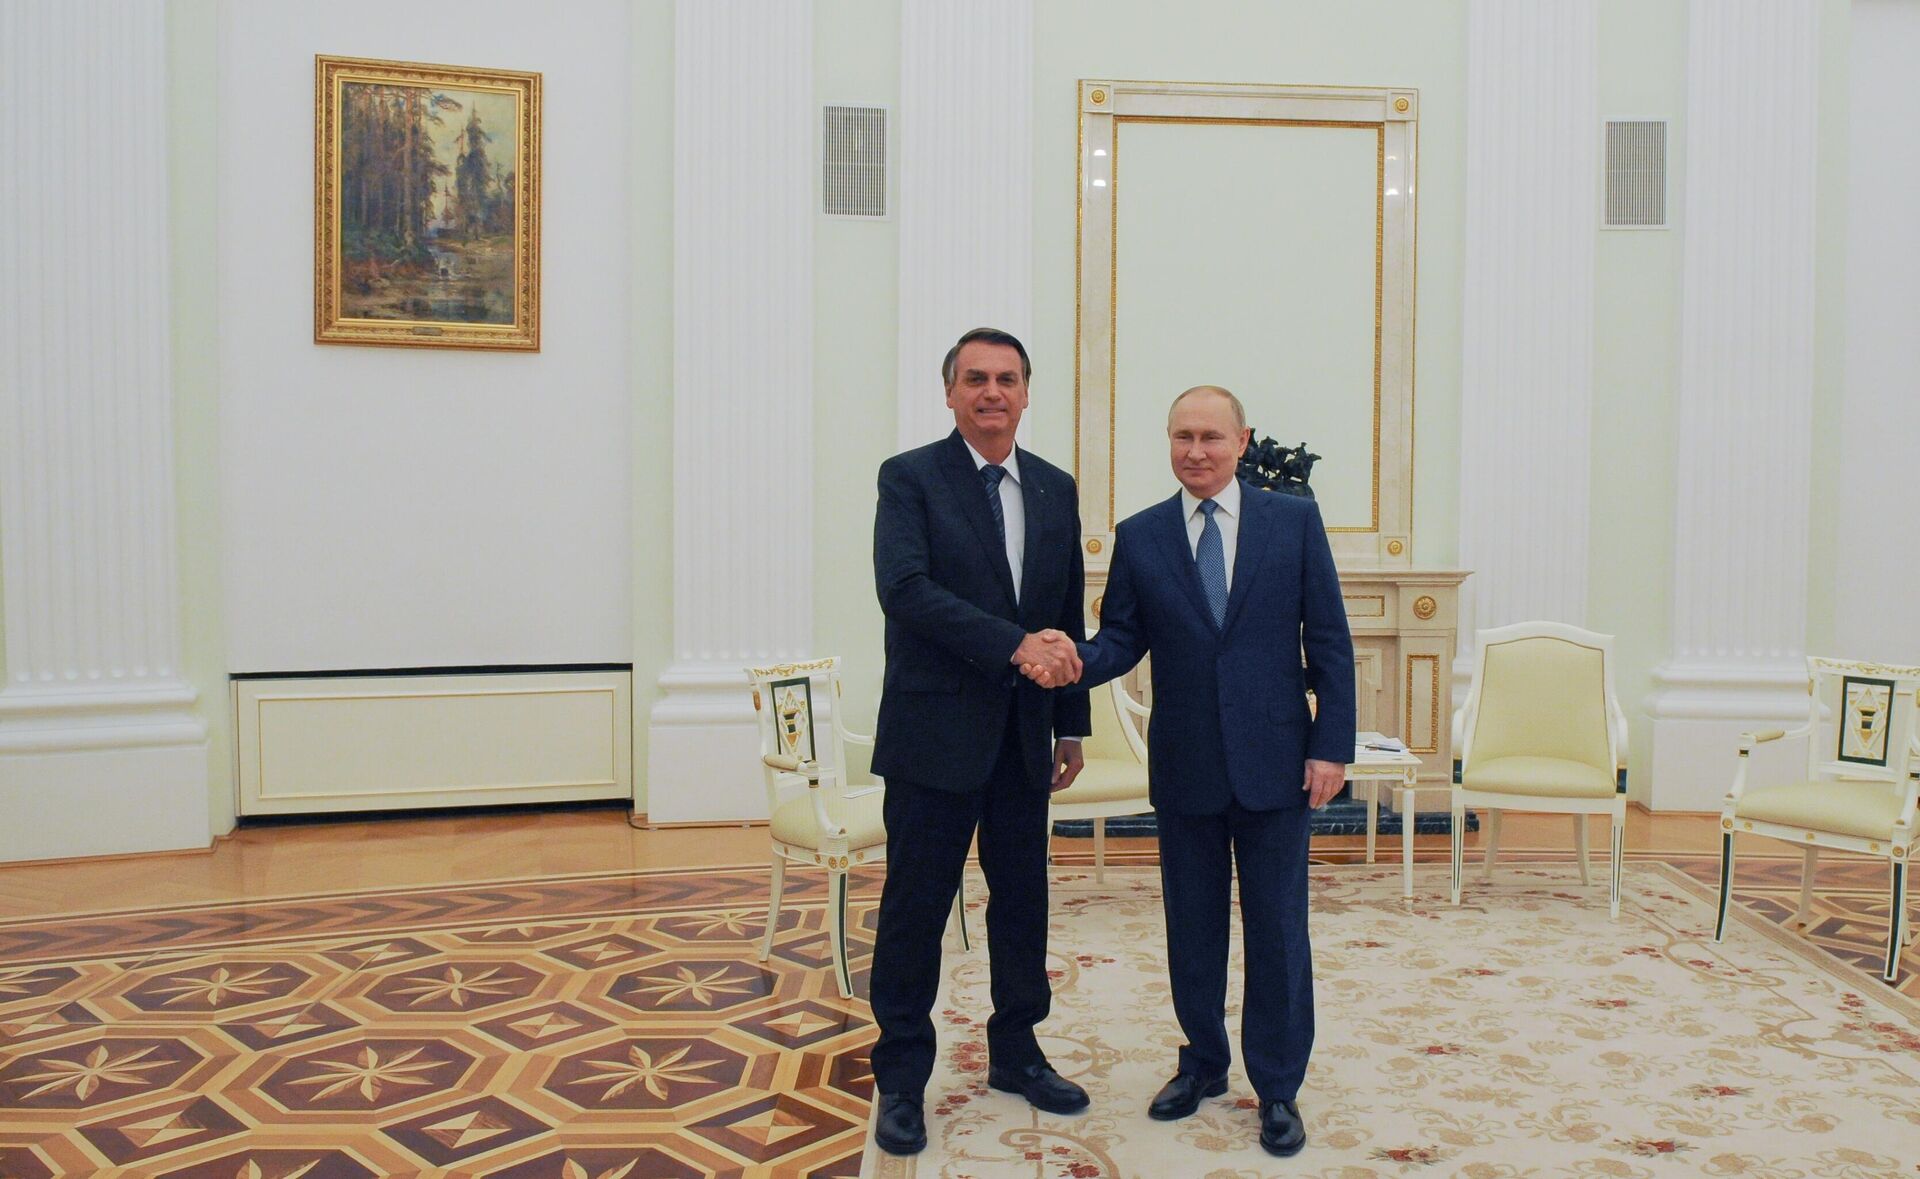 Ngày 16 tháng 2 năm 2022. Tổng thống Nga Vladimir Putin và Tổng thống Brazil Jair Bolsonaro (trái) trong cuộc gặp ở Điện Kremlin. - Sputnik Việt Nam, 1920, 01.03.2022